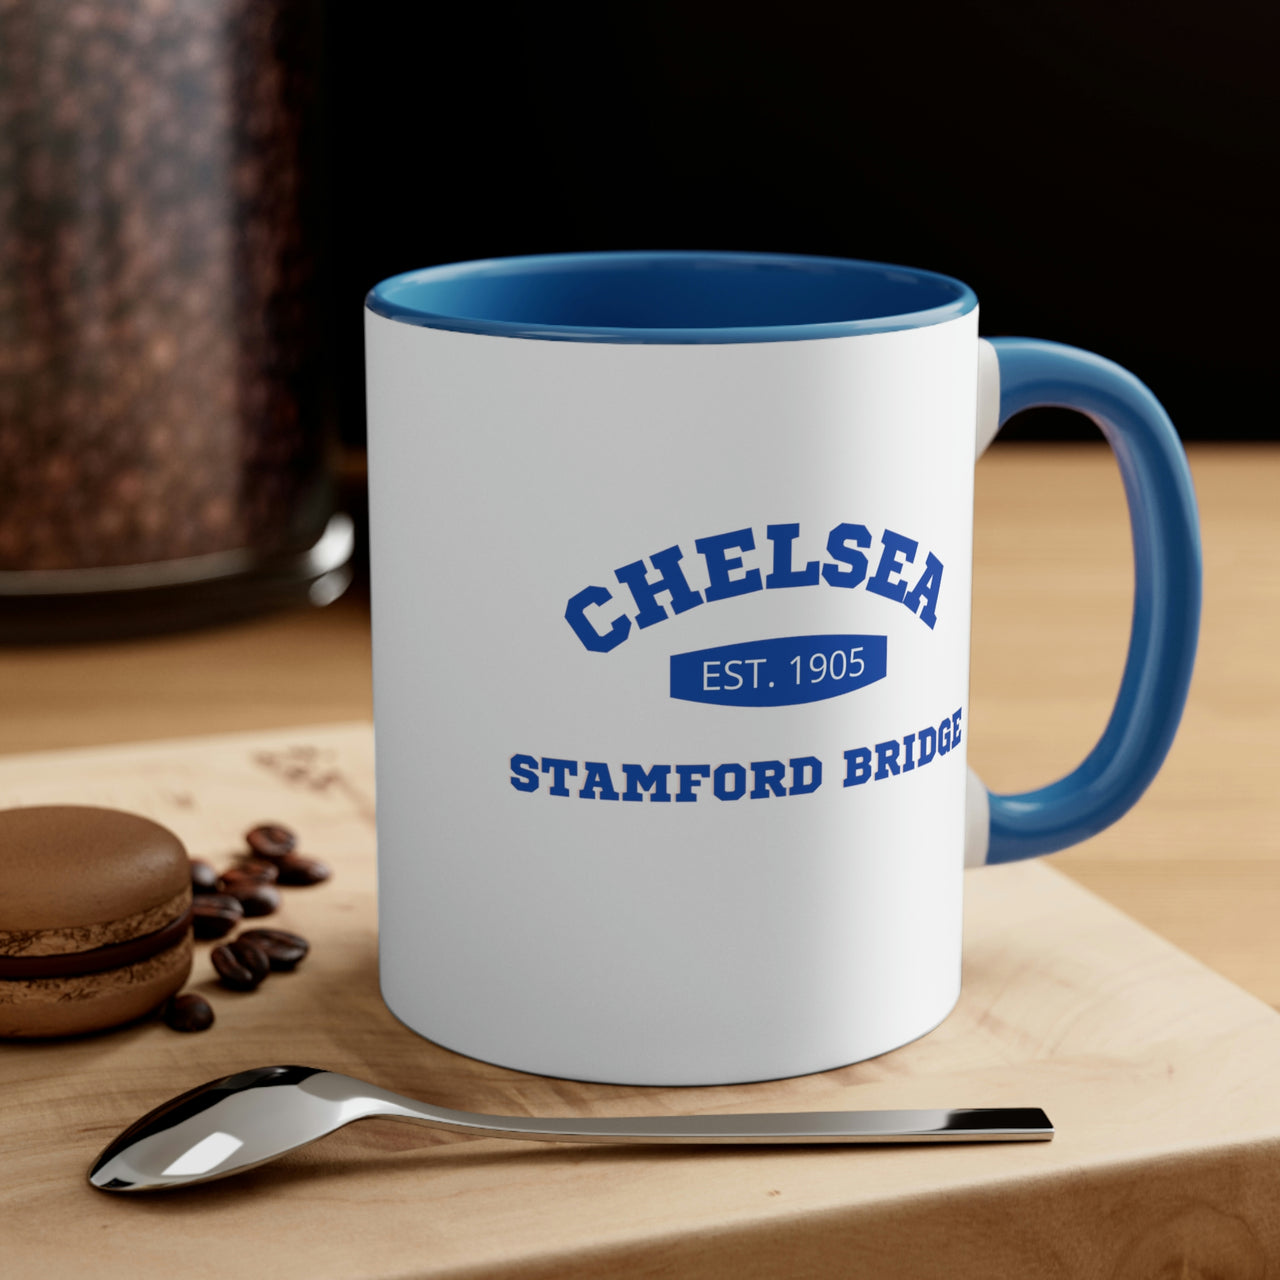 Chelsea Coffee Mug, 11oz